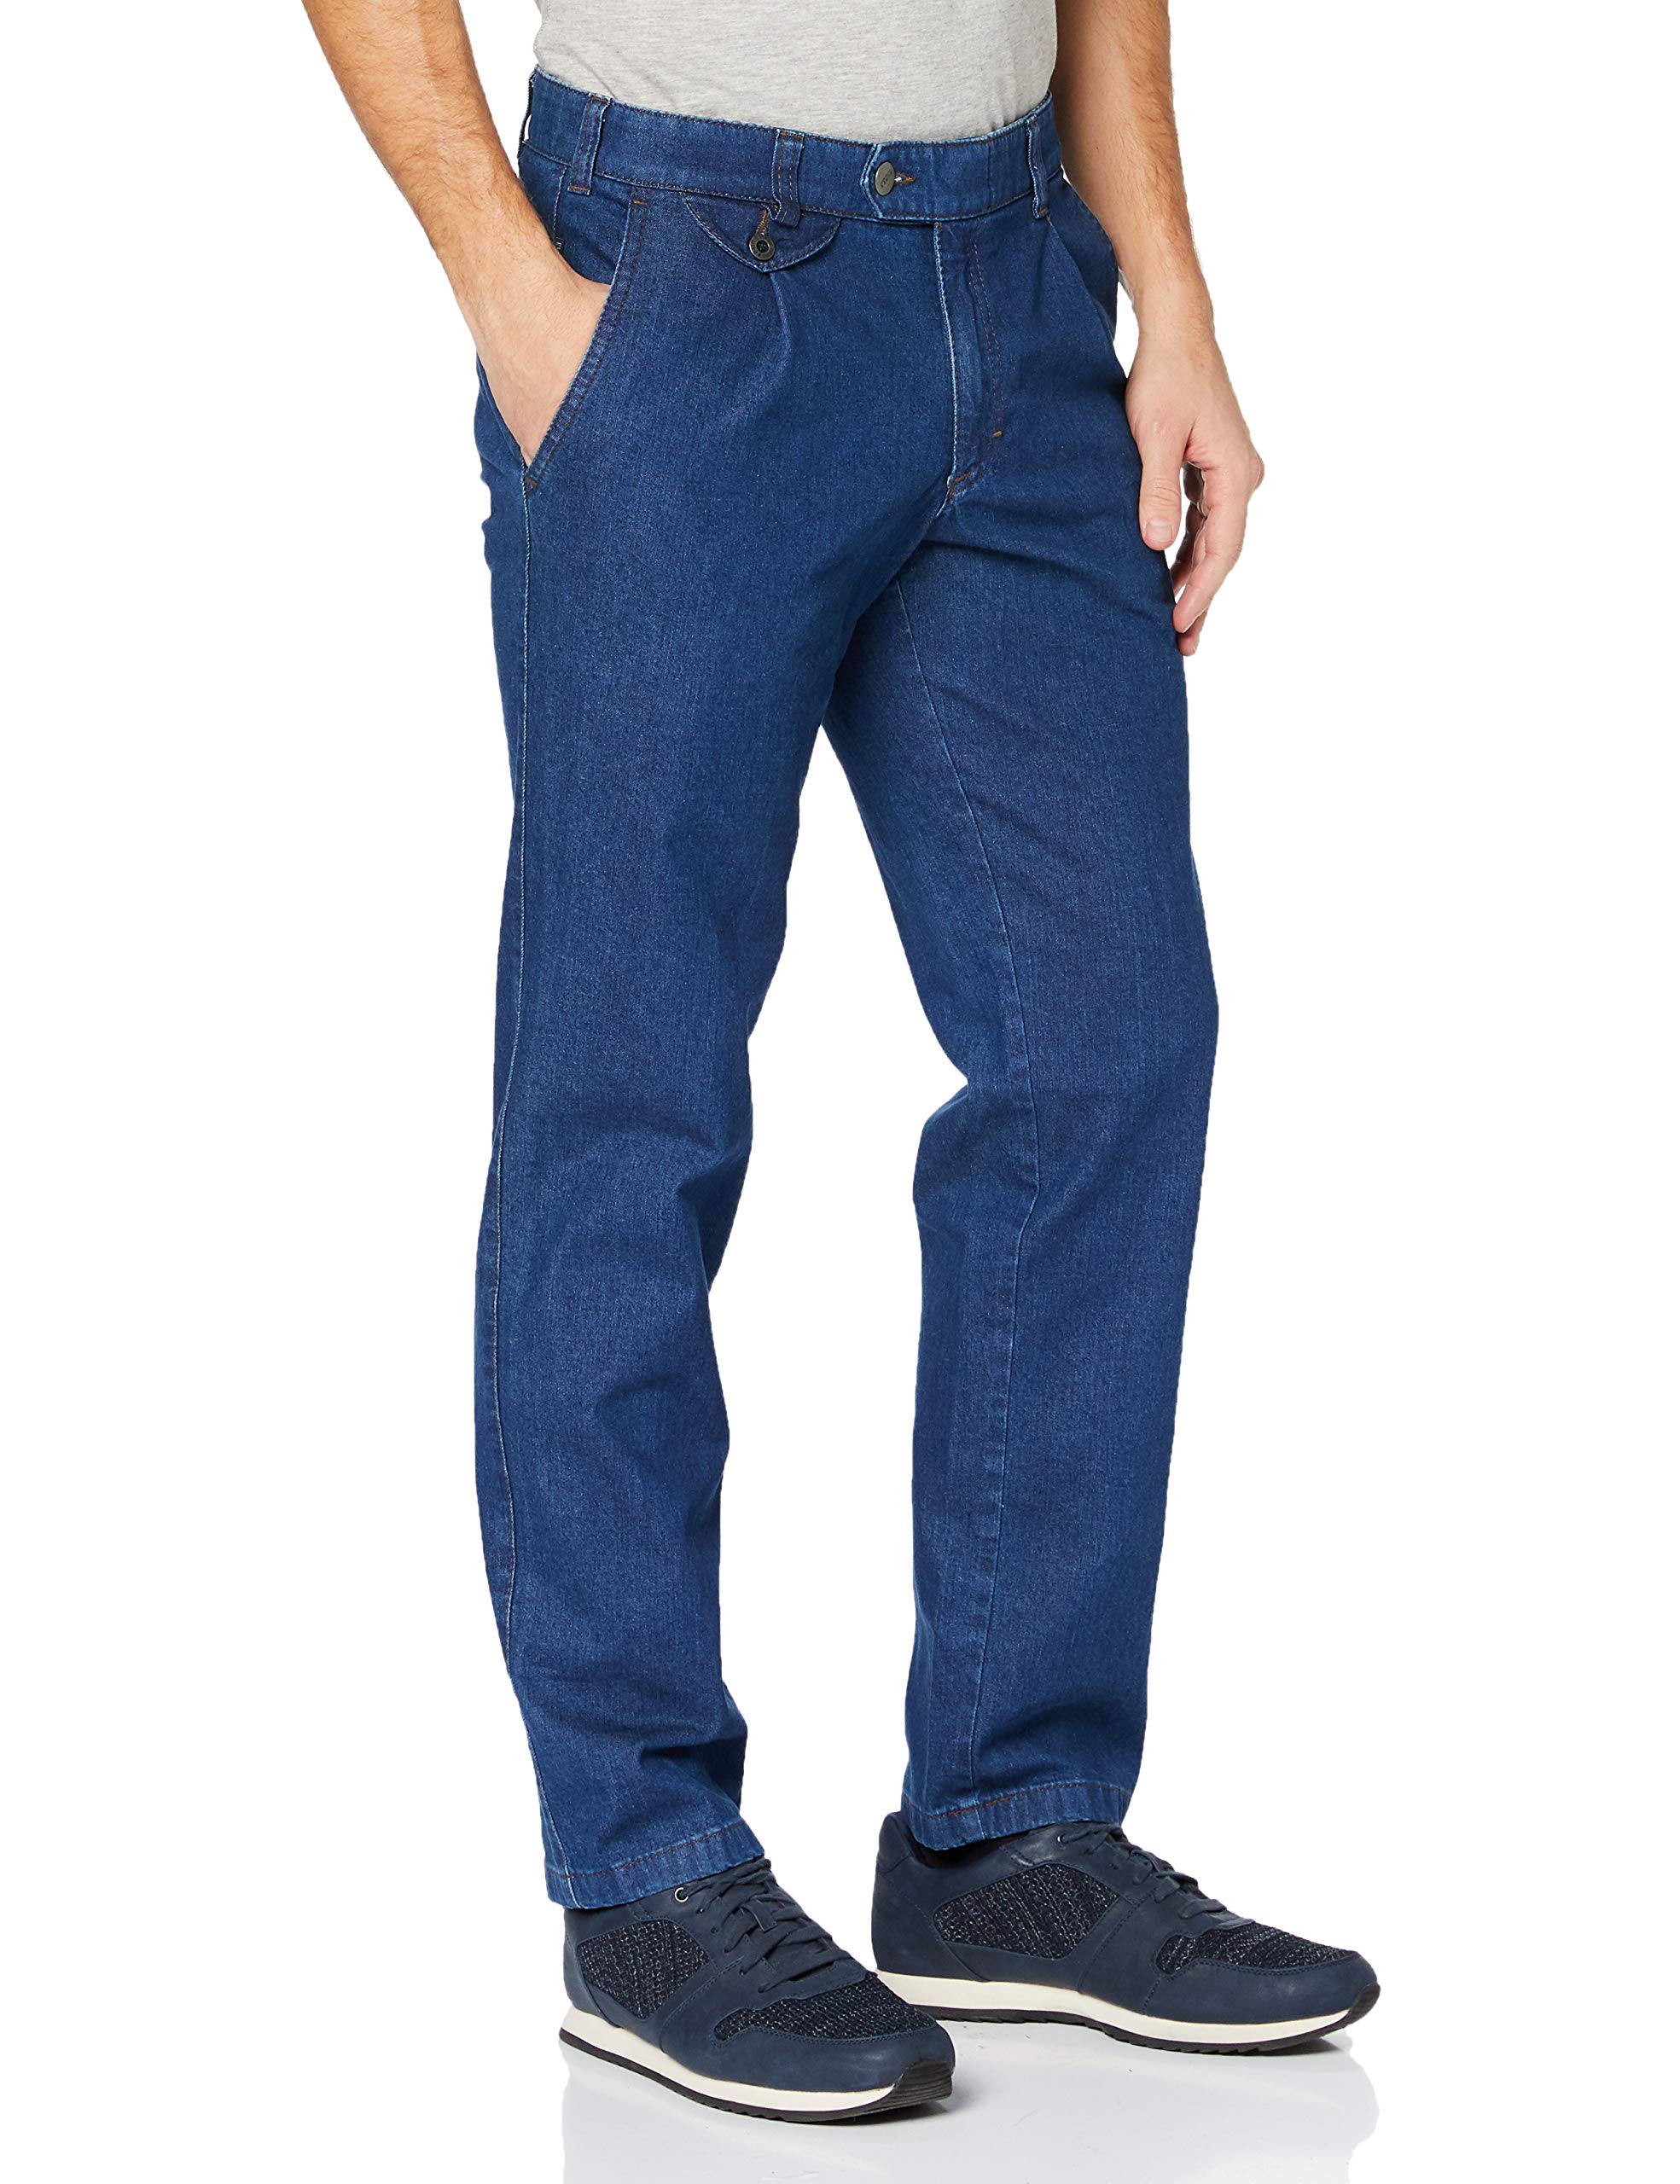 EUREX by BRAX Herren Ergo Cut Jeans Bundfalten-Hose Style Fred 321 Stretch, Blau 22, 27U